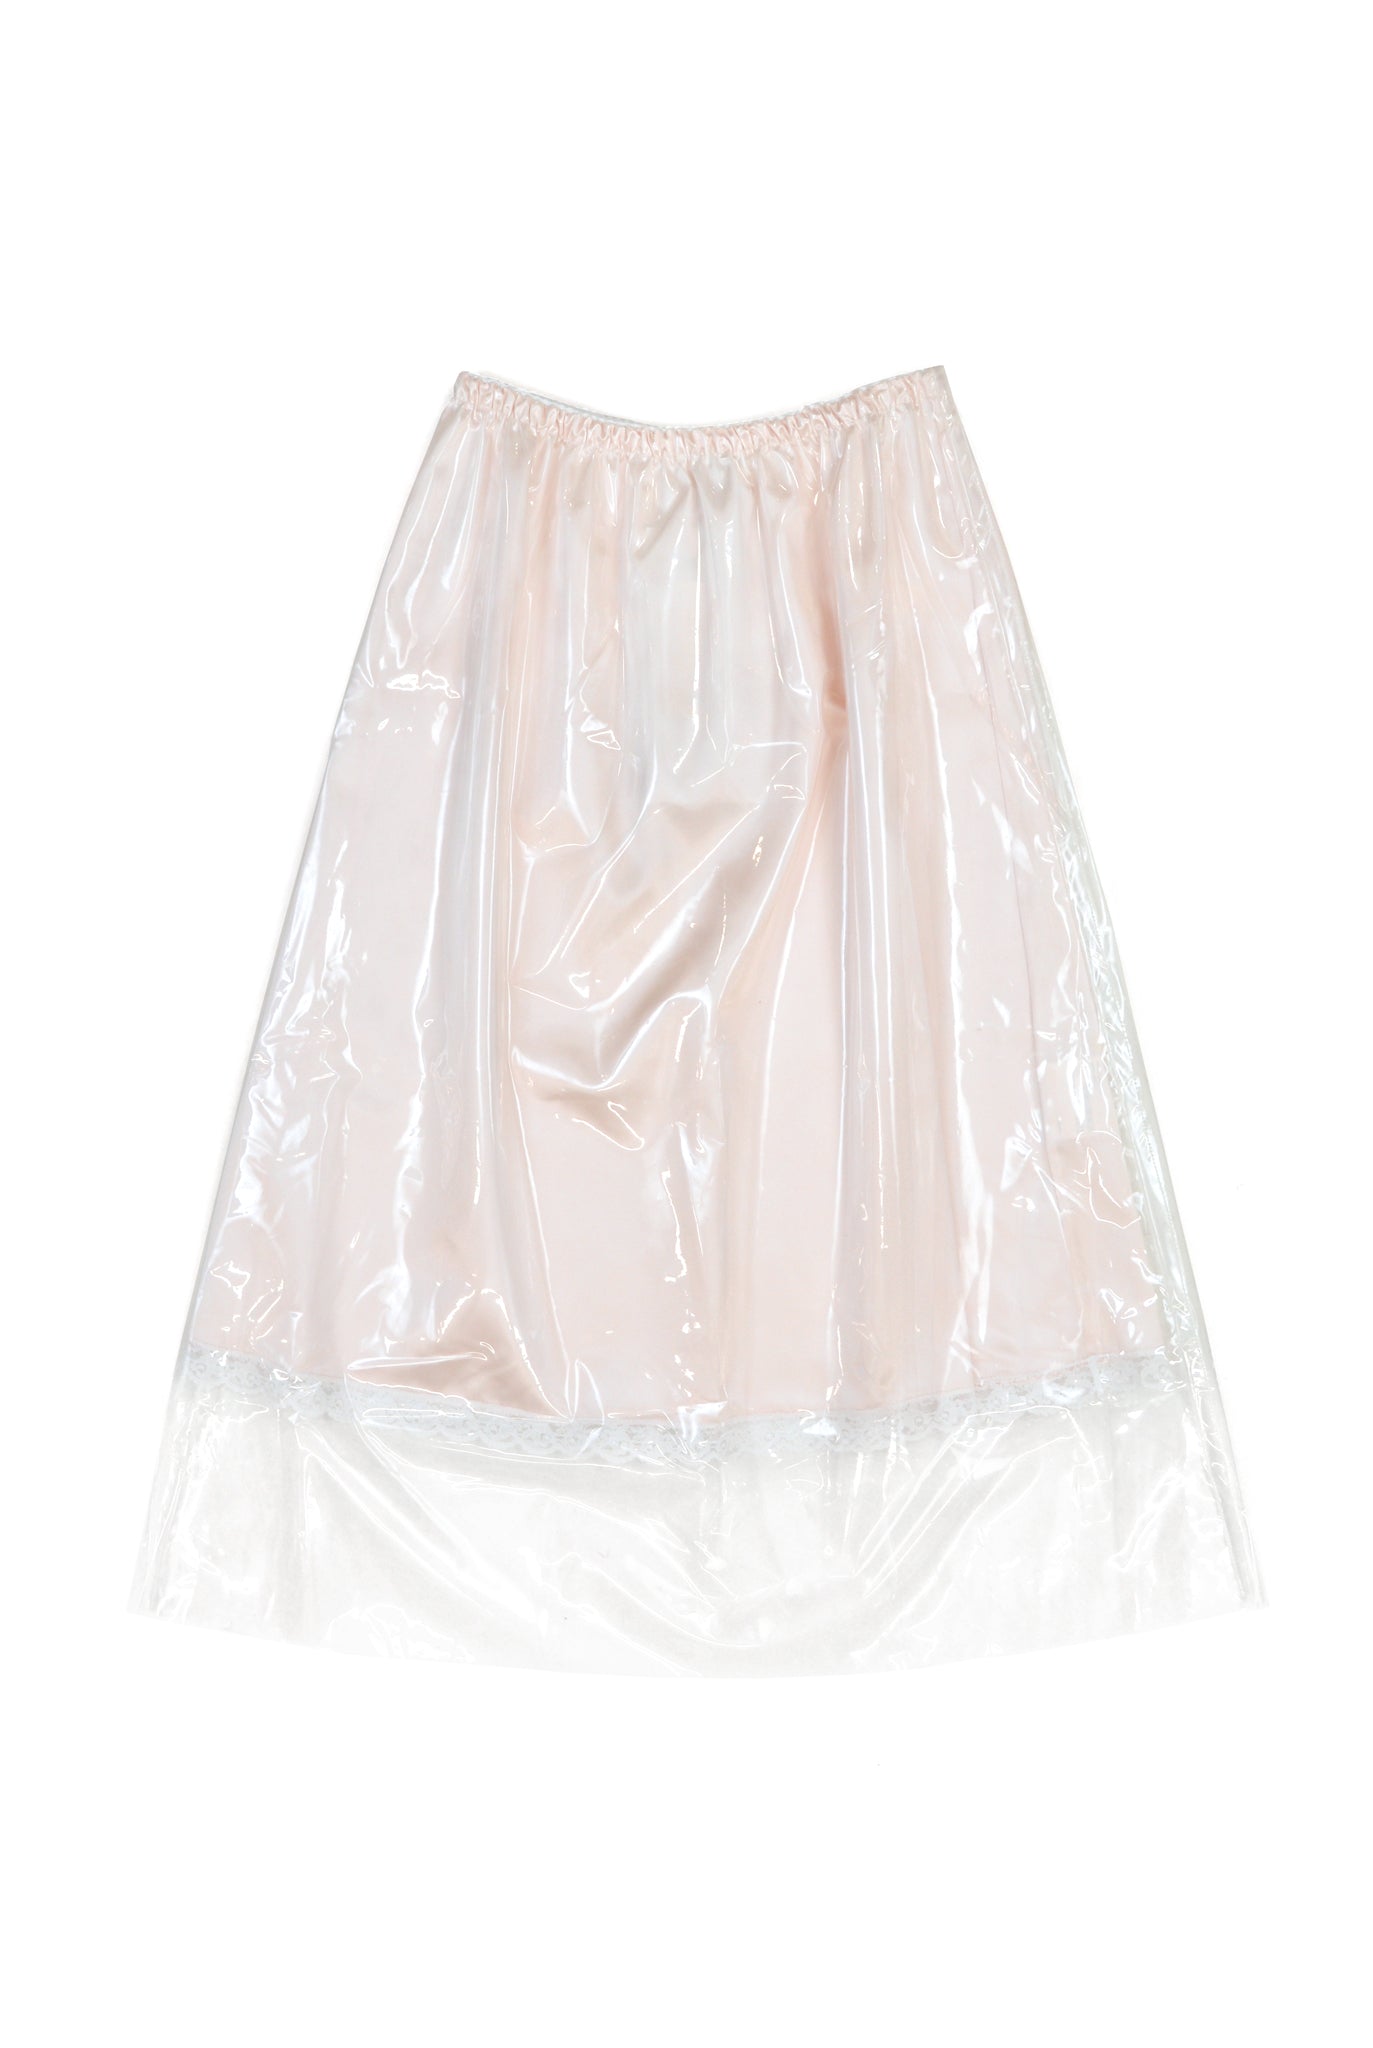 Vaquera Preserved Slip Skirt, Champagne